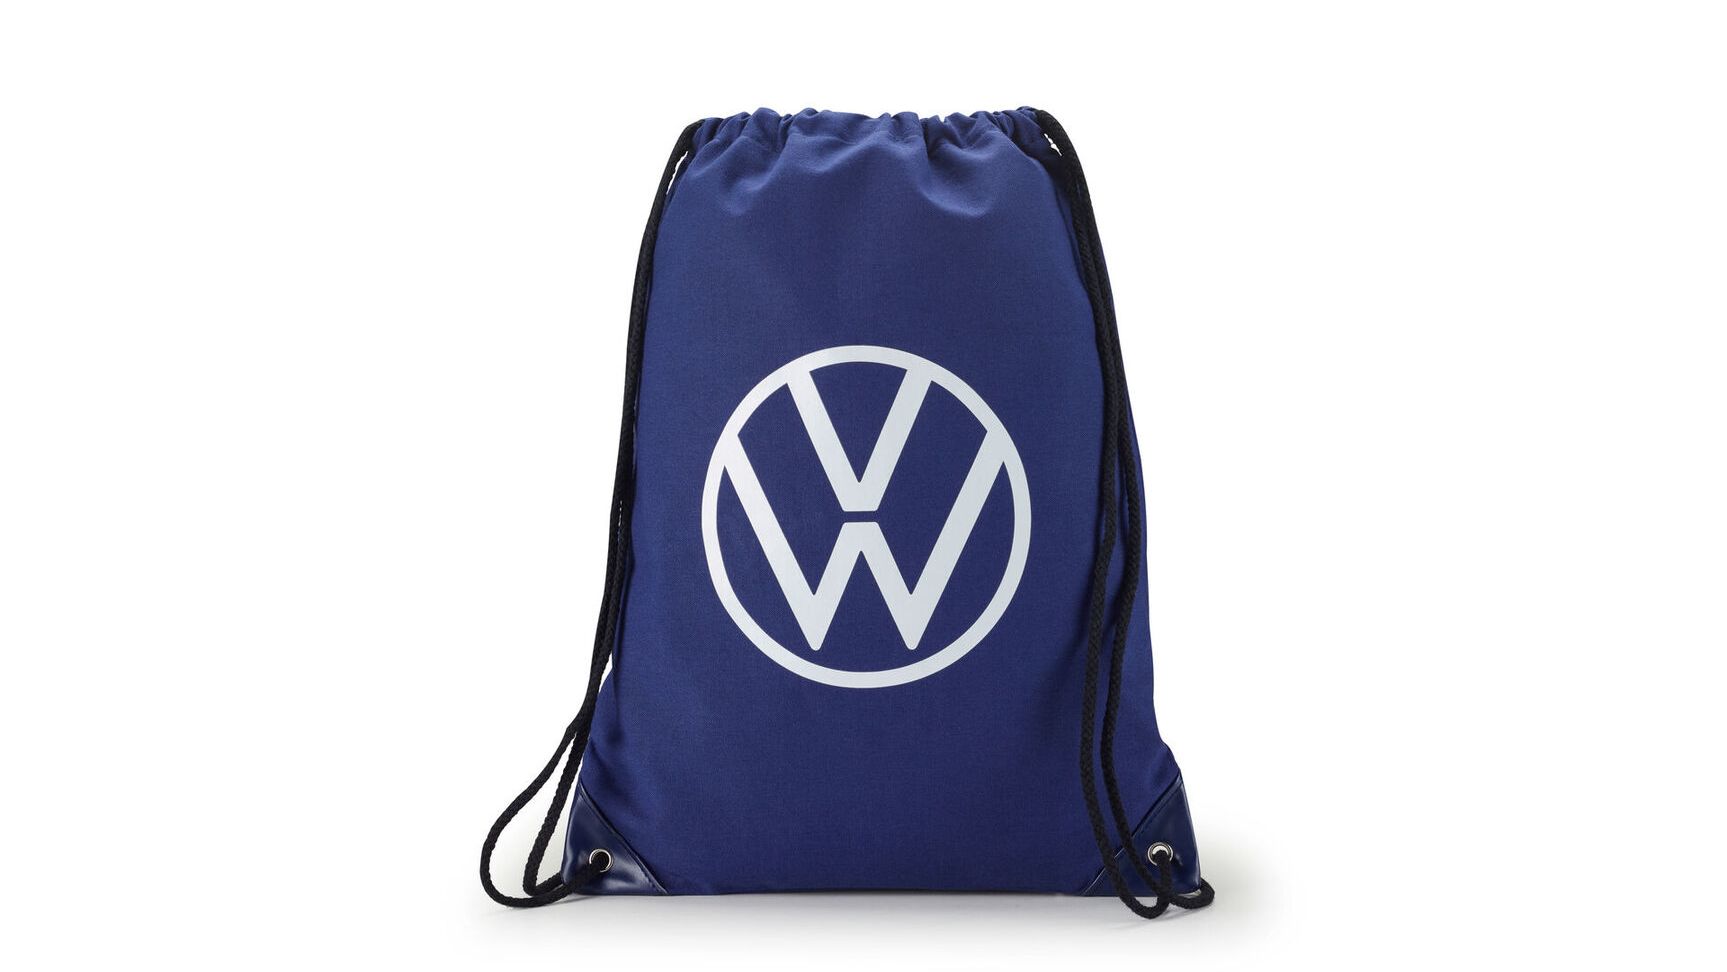 VW Turnbeutel mit Volkswagen Logo in Weiß